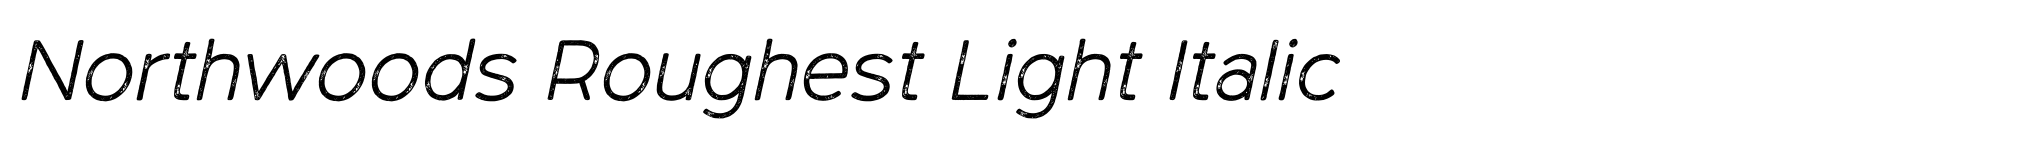 Northwoods Roughest Light Italic image